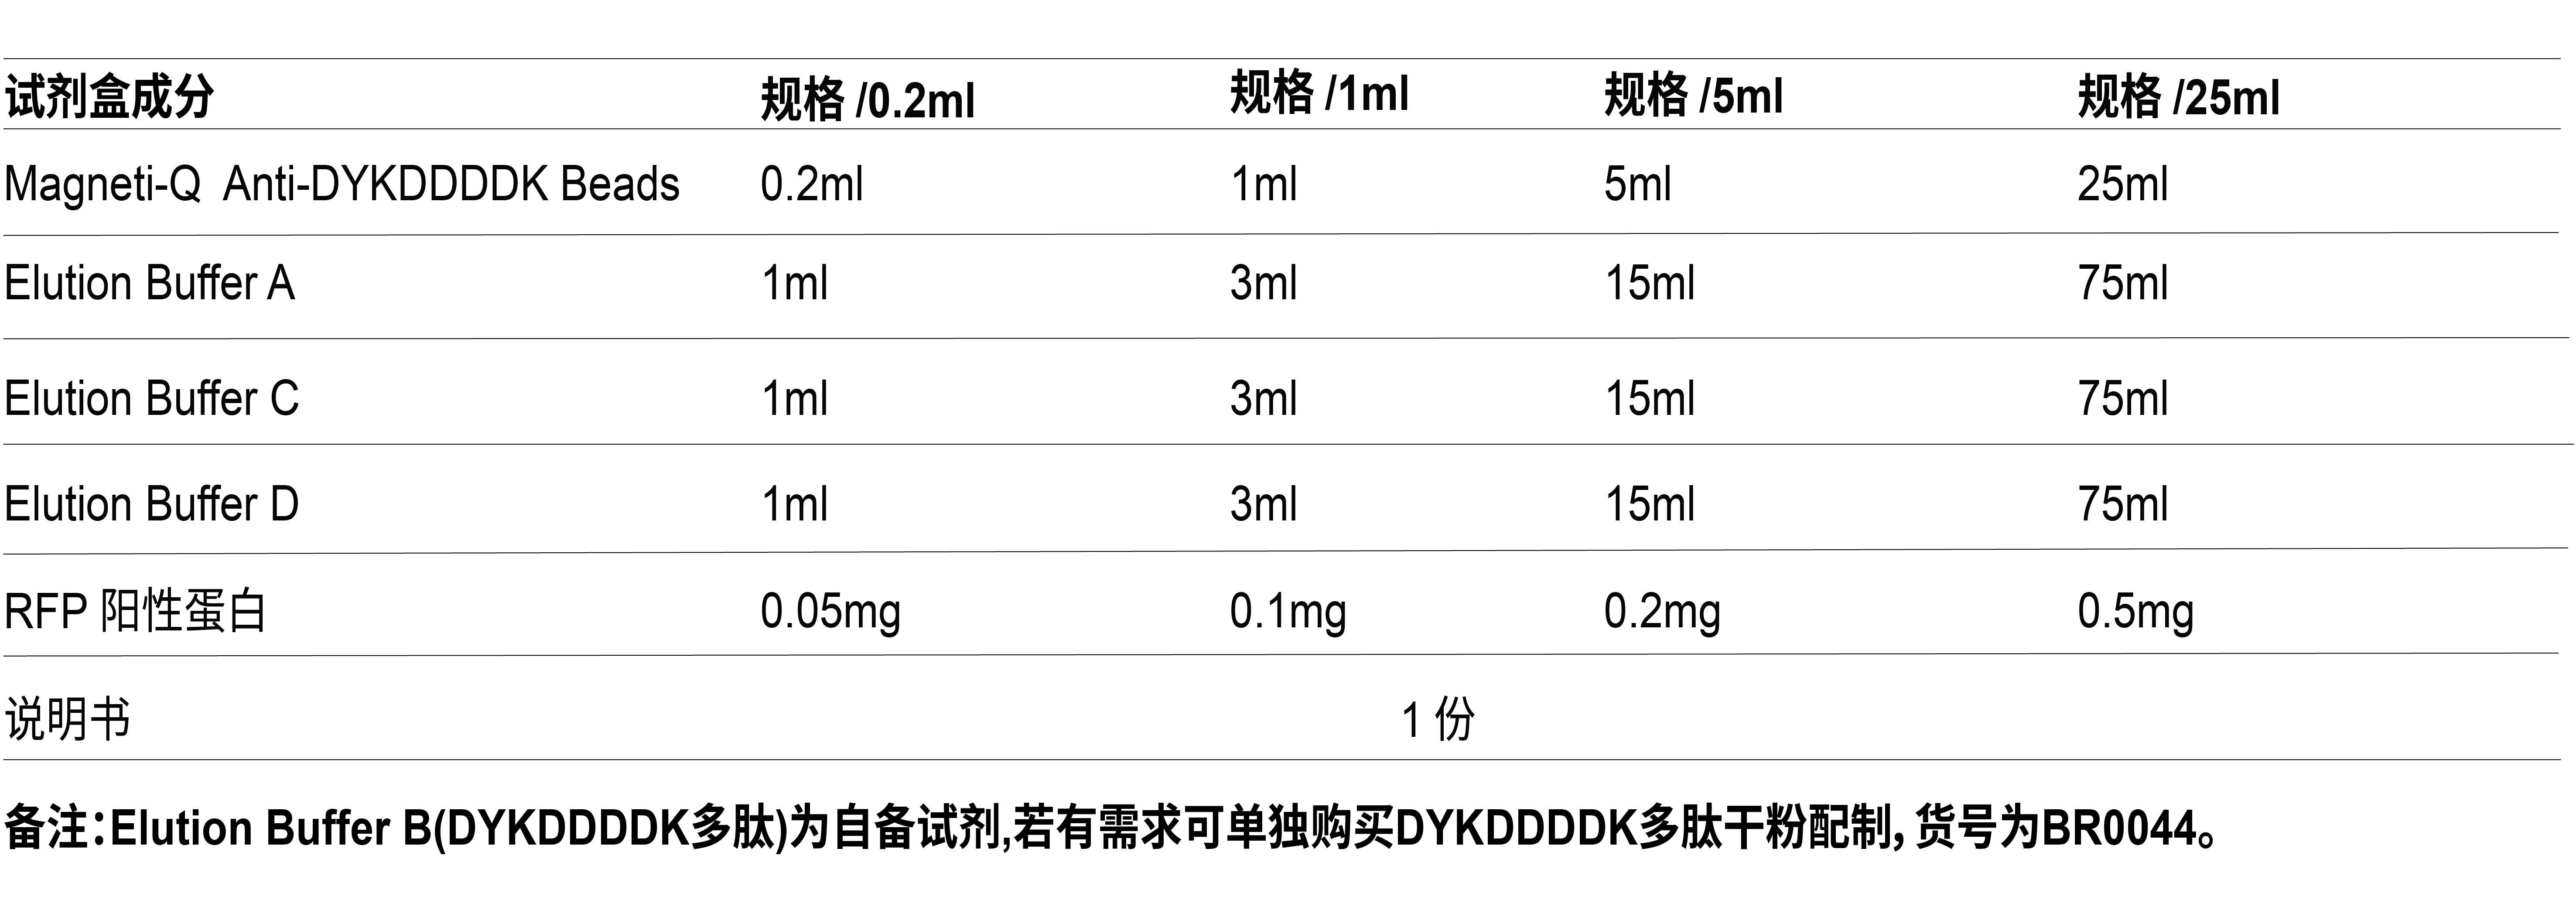 ACE Magneti-Q DYKDDDDK（FLAG）标签蛋白纯化试剂盒（BK1001）